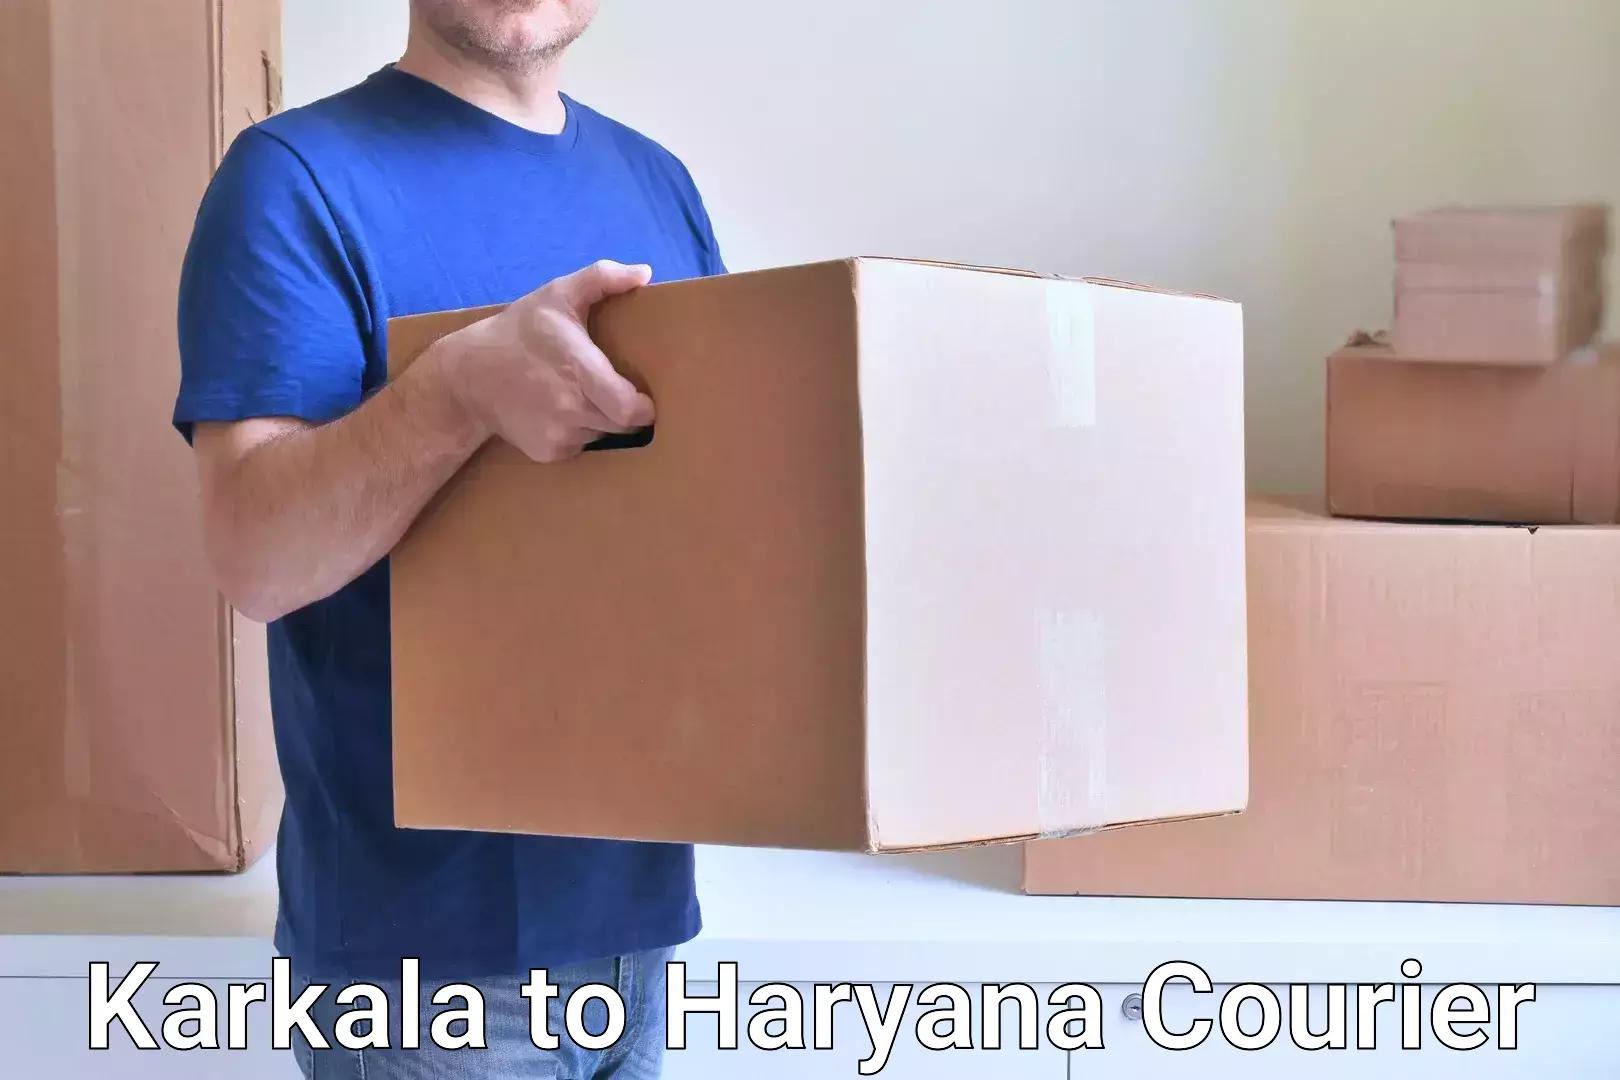 Cargo delivery service Karkala to Haryana